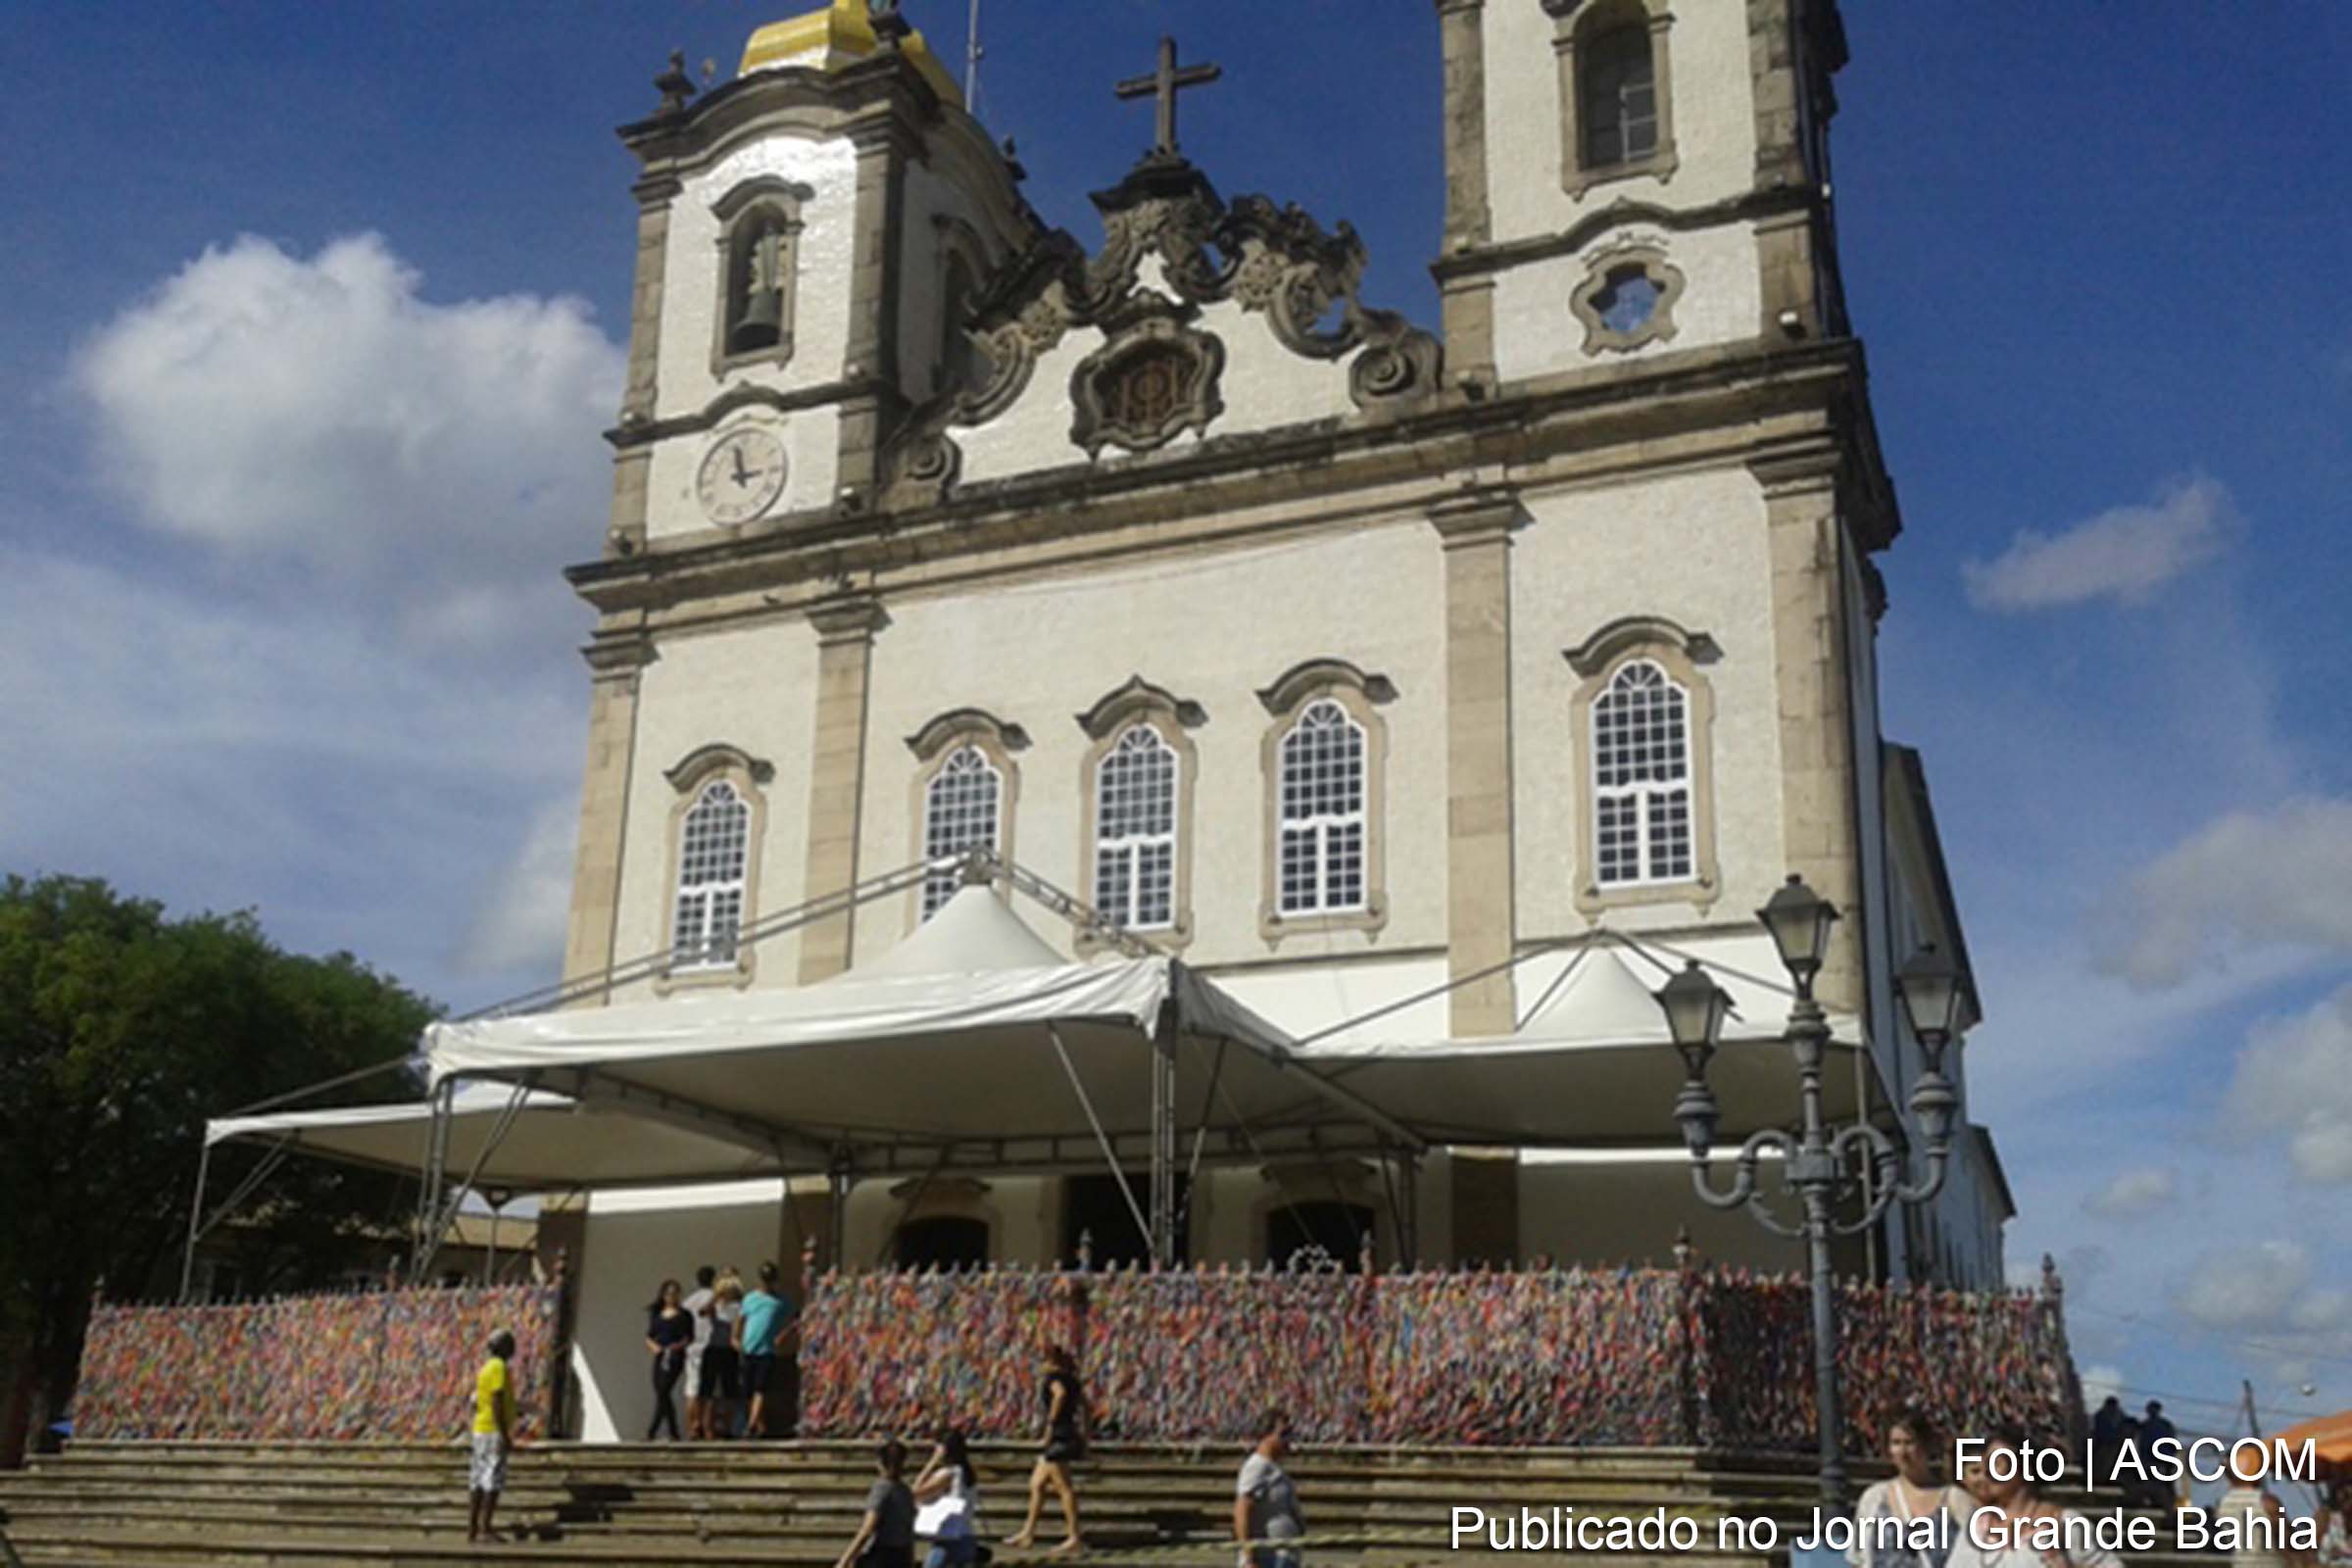 Fachada da Basílica Santuário do Nosso Senhor do Bonfim, em Salvador.